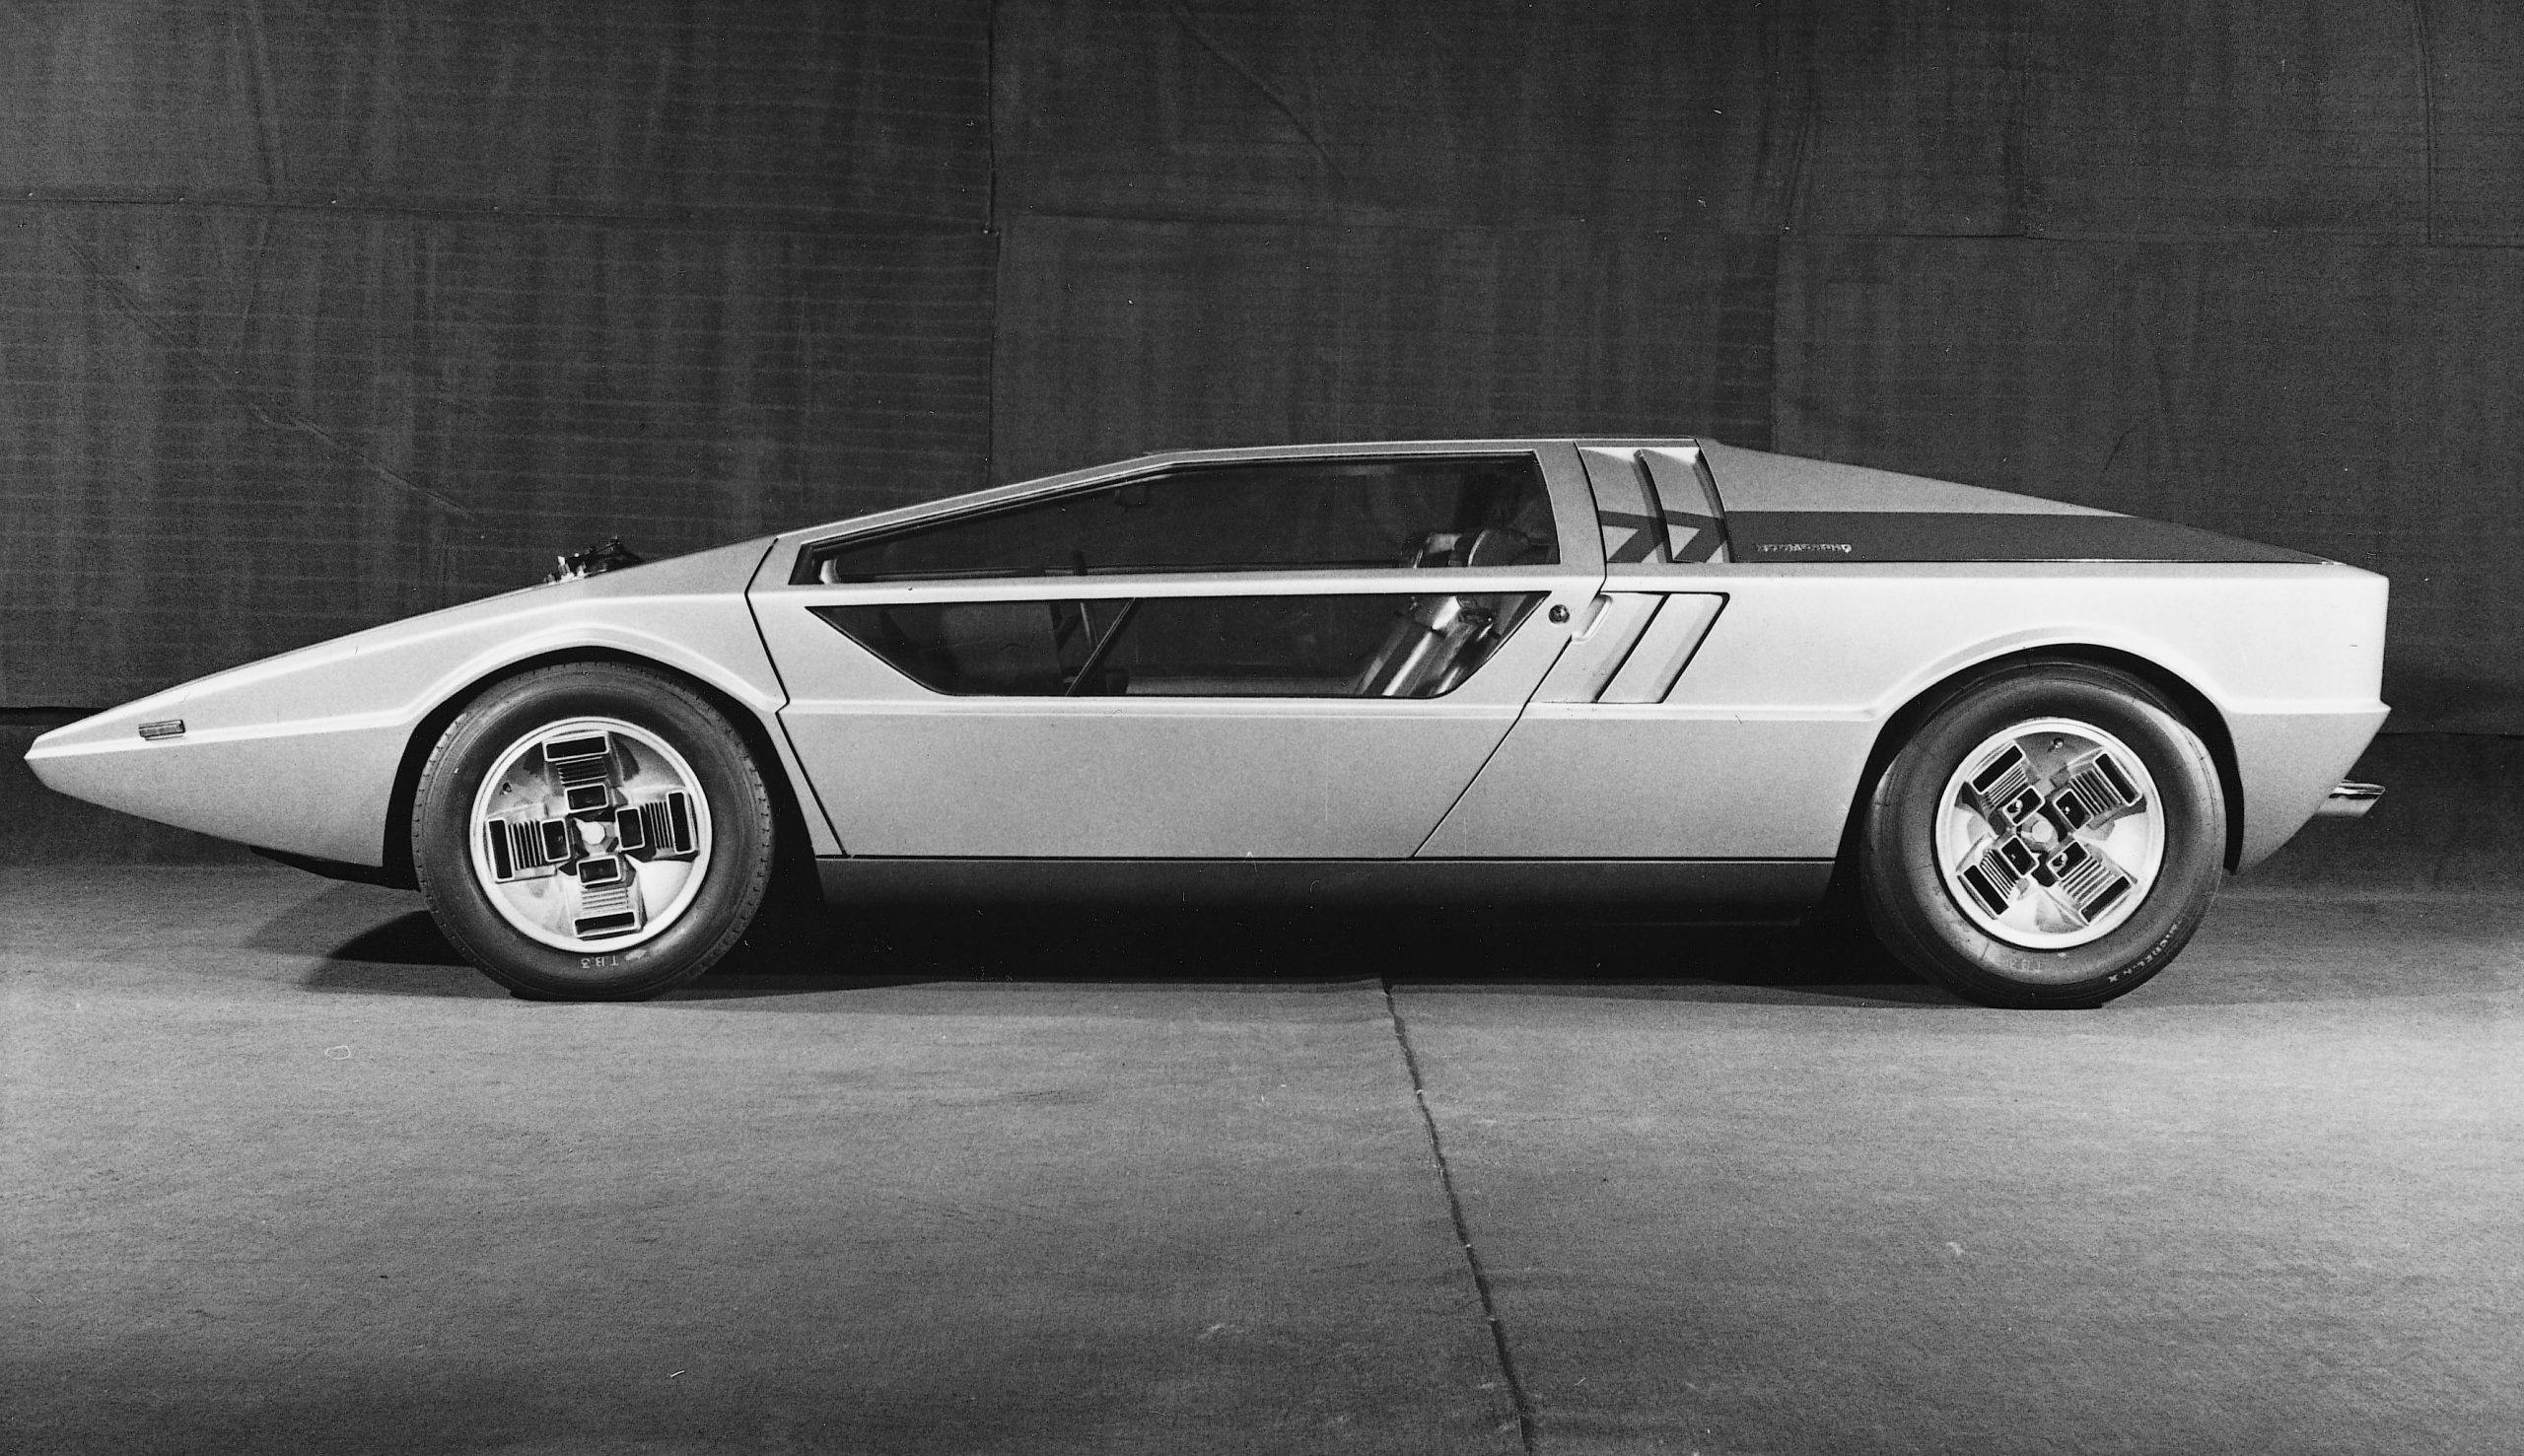 1971 Maserati Boomerang wedge concept car